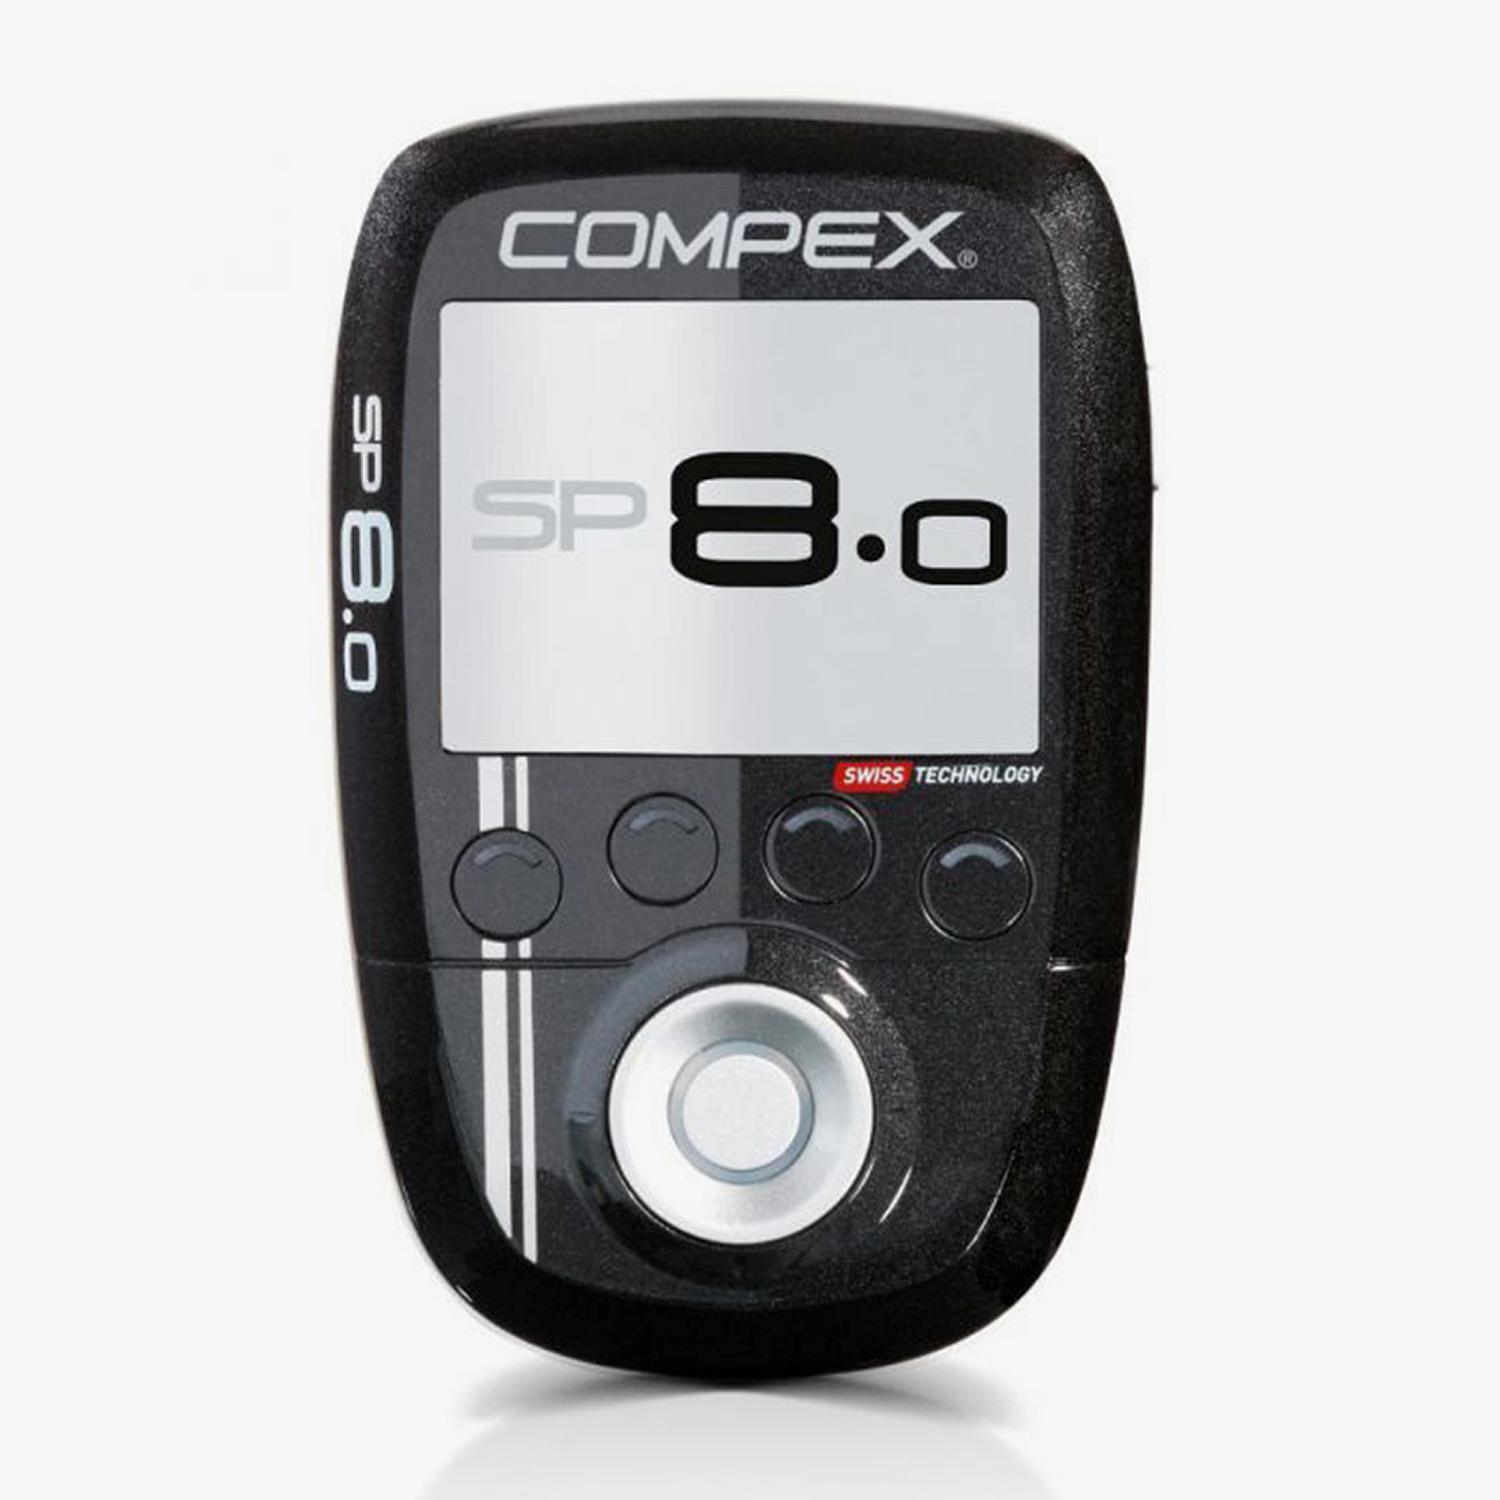 Compex Sp 8.0 - Noir - Stimulateur Musculaire sports taille UNICA